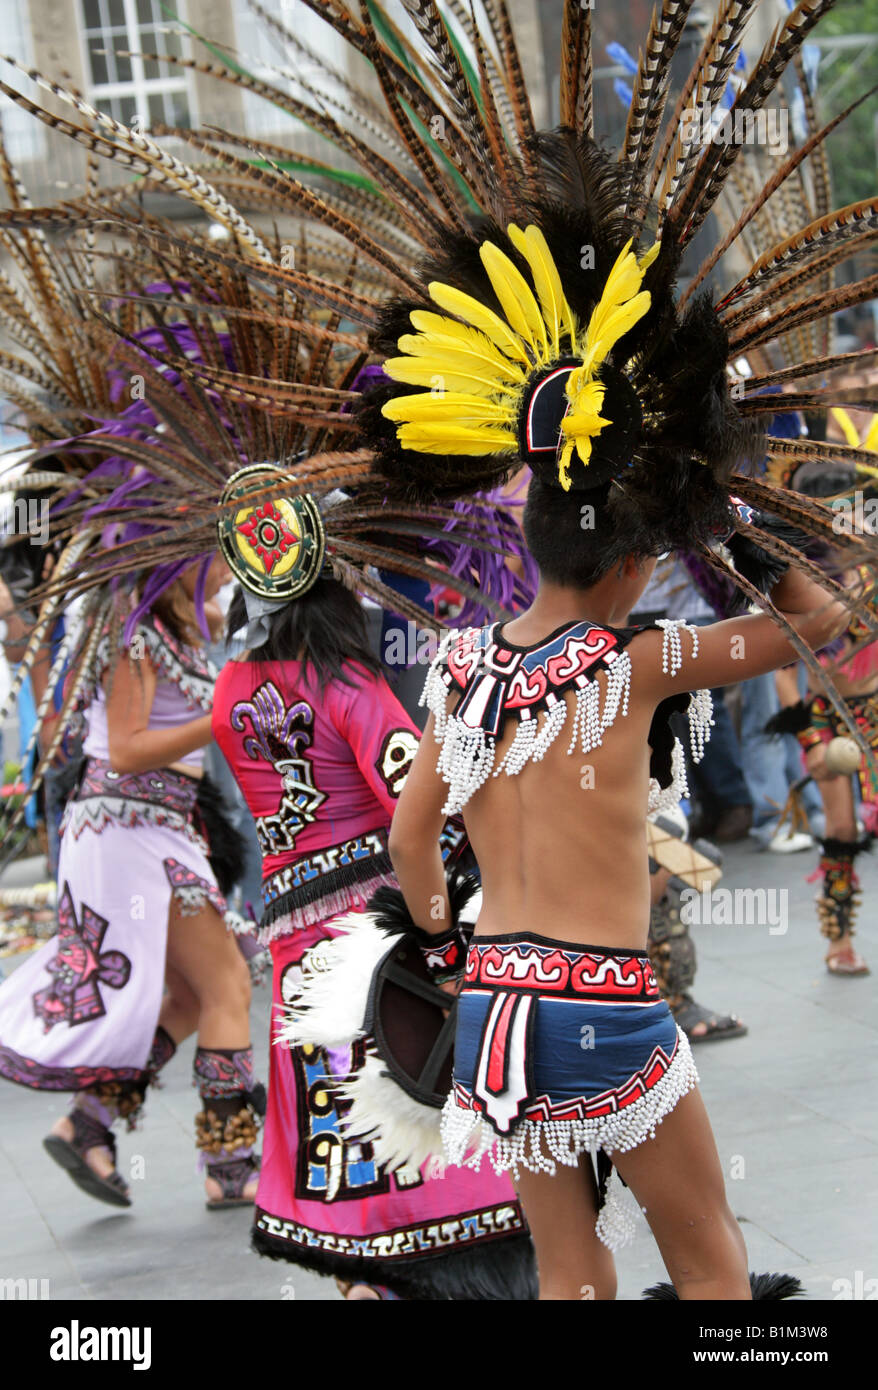 Mexican Dancers in Aztec Costume, Zocalo Square, Plaza de la Constitucion, Mexico City, Mexico Stock Photo